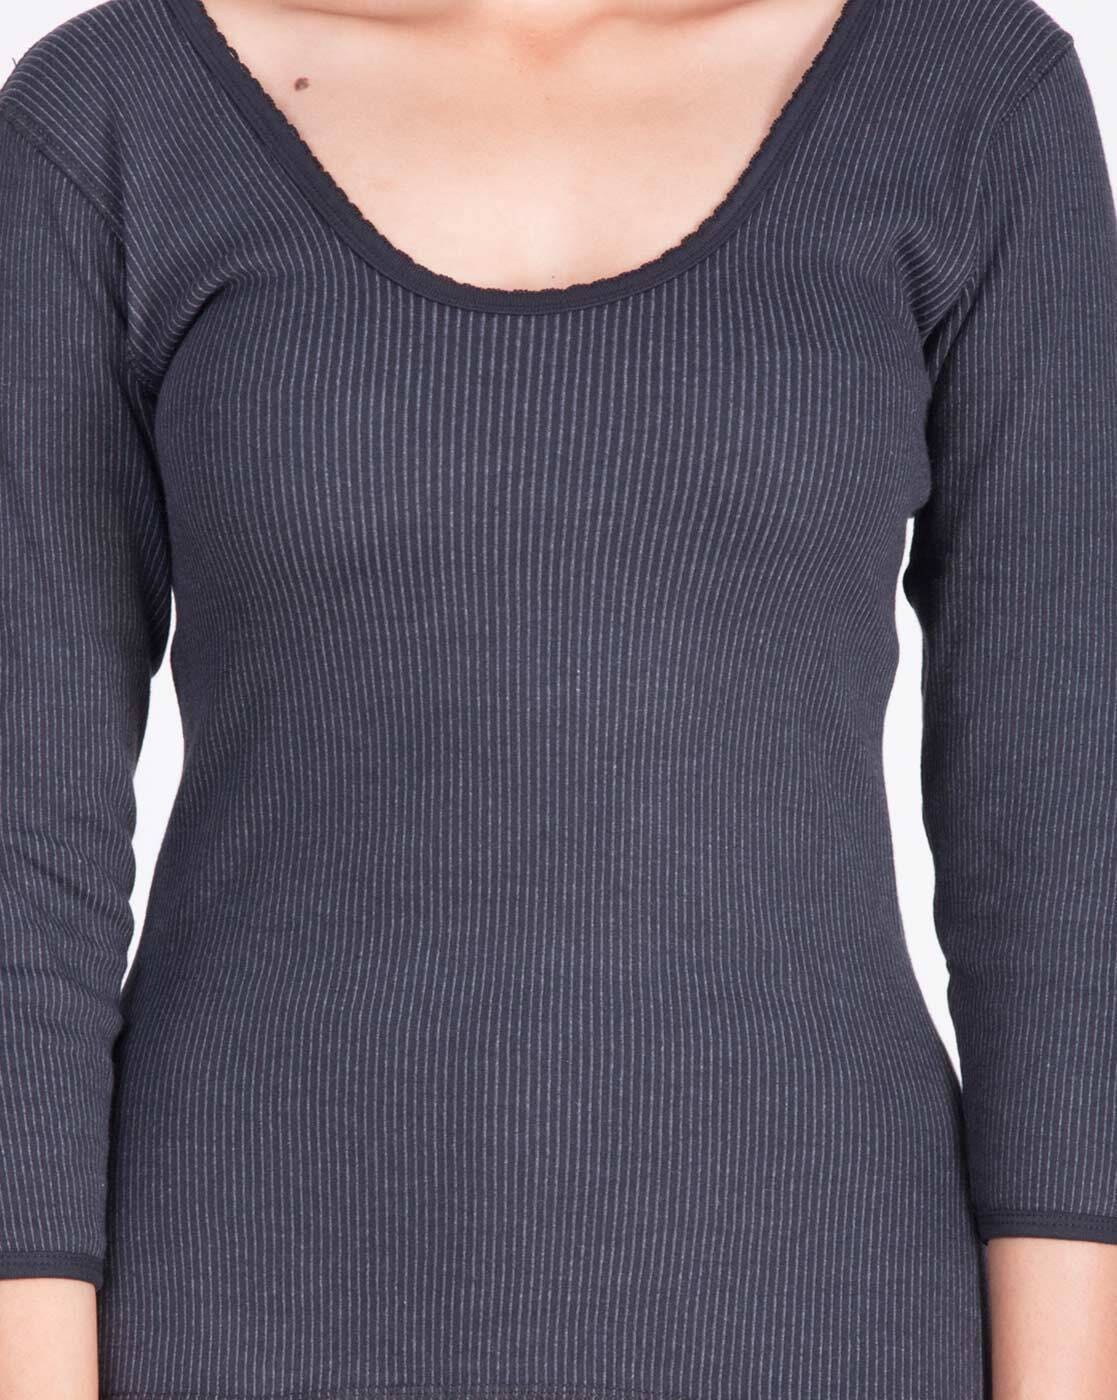 Buy Black Thermal Wear for Women by DOLLAR ULTRA Online